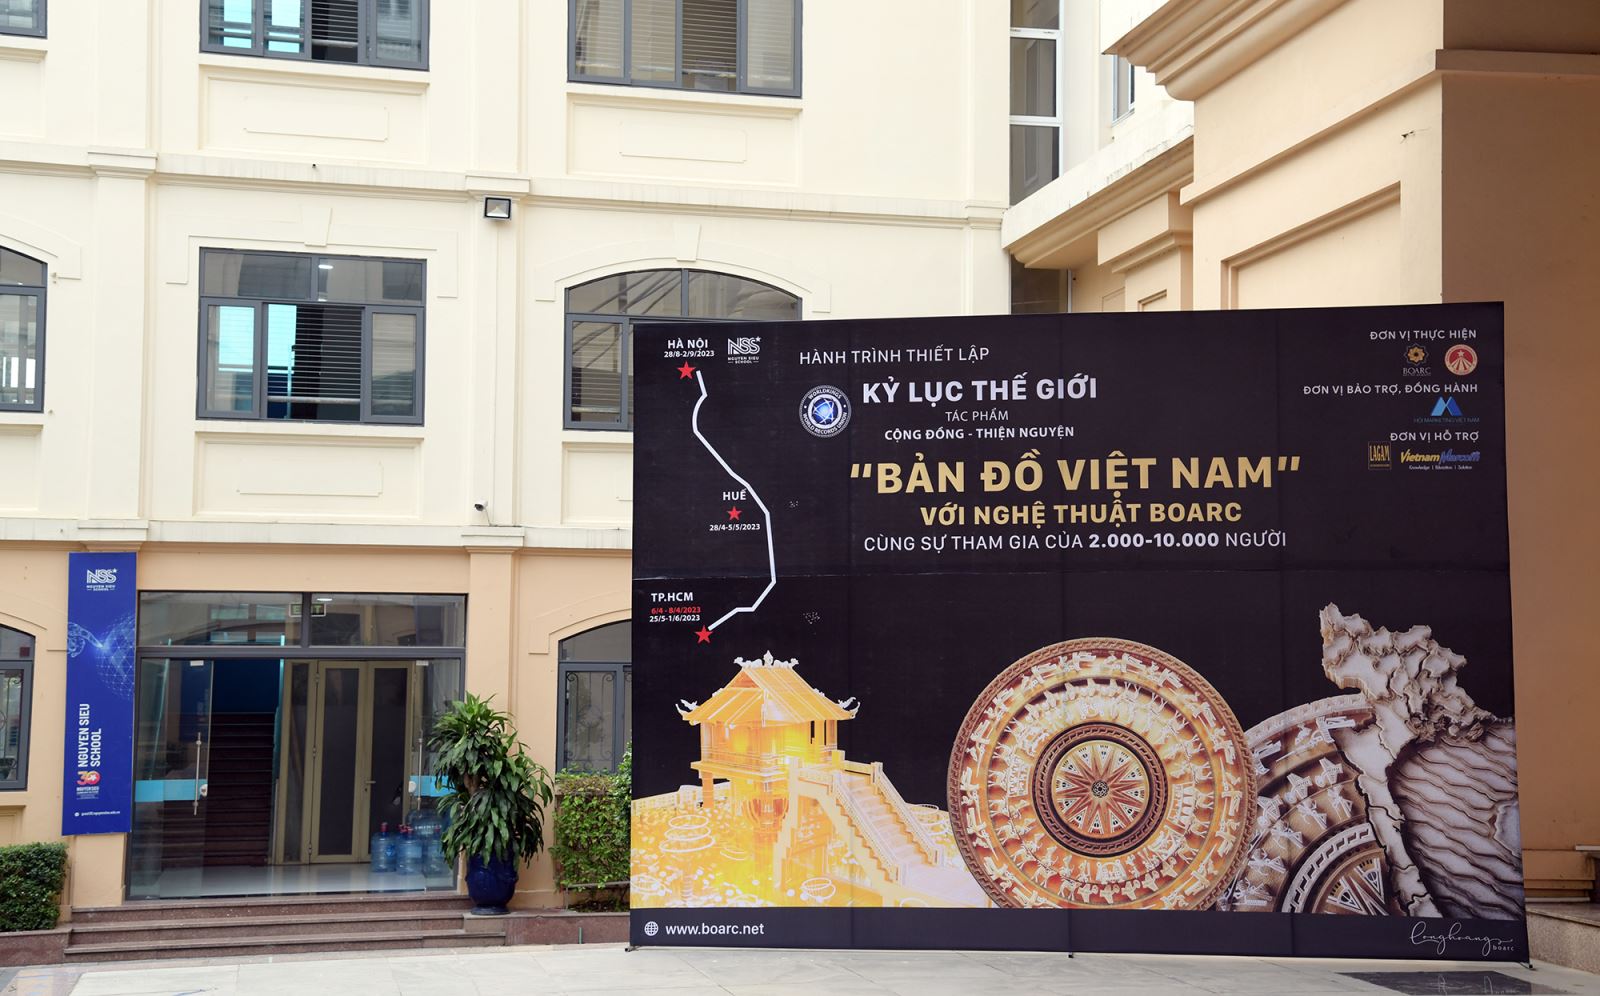 NSers sẵn sàng cho kỉ lục thế giới Bản đồ Việt Nam bằng nghệ thuật BOARC